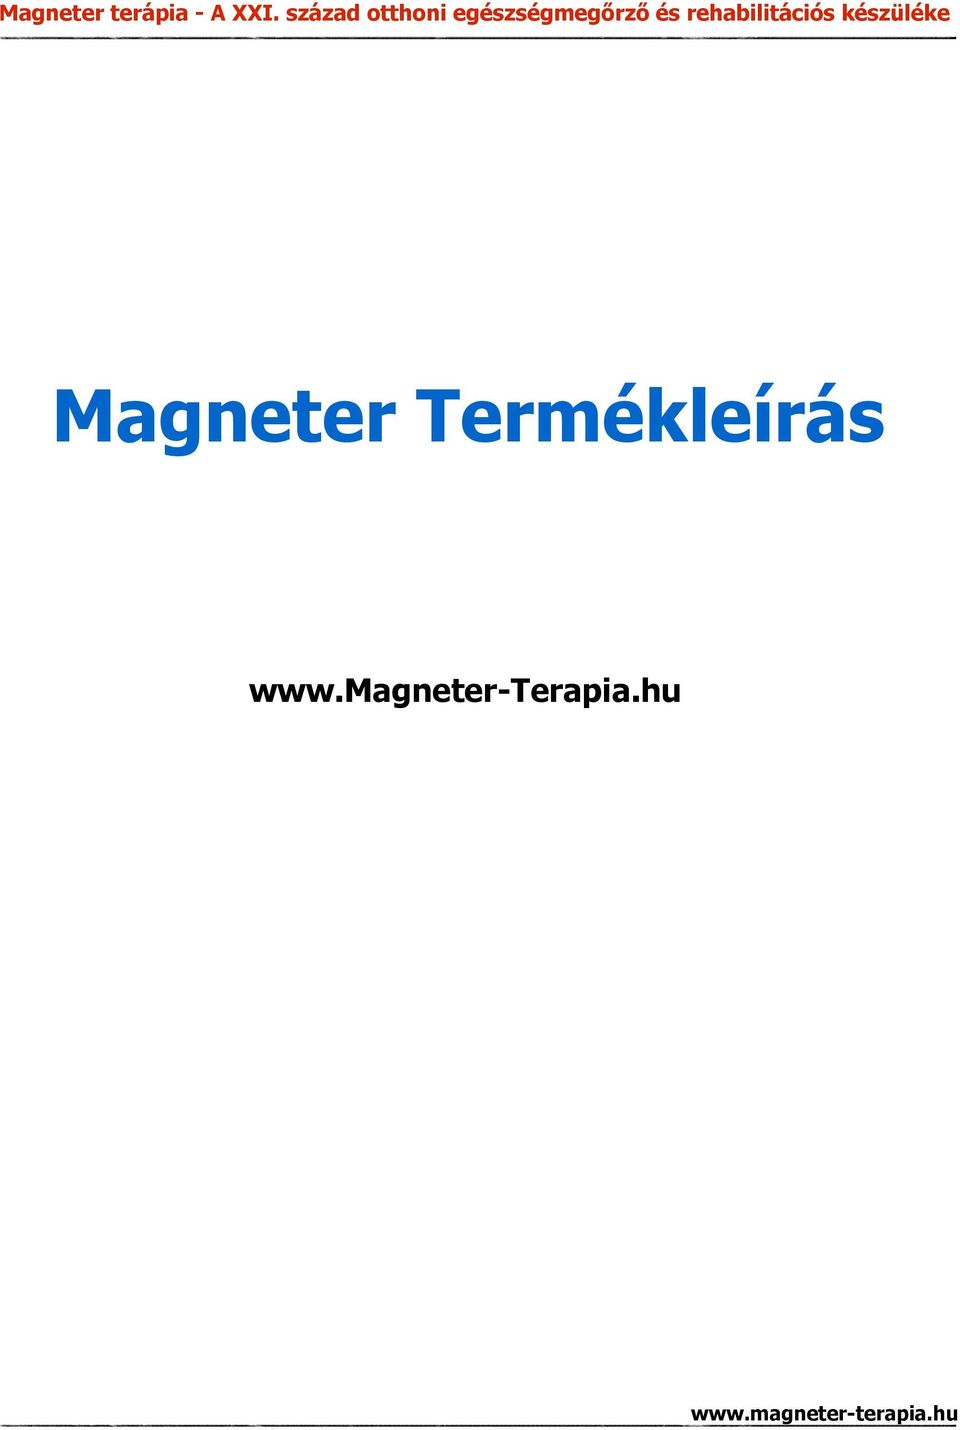 Magneter Termékleírás - PDF Ingyenes letöltés